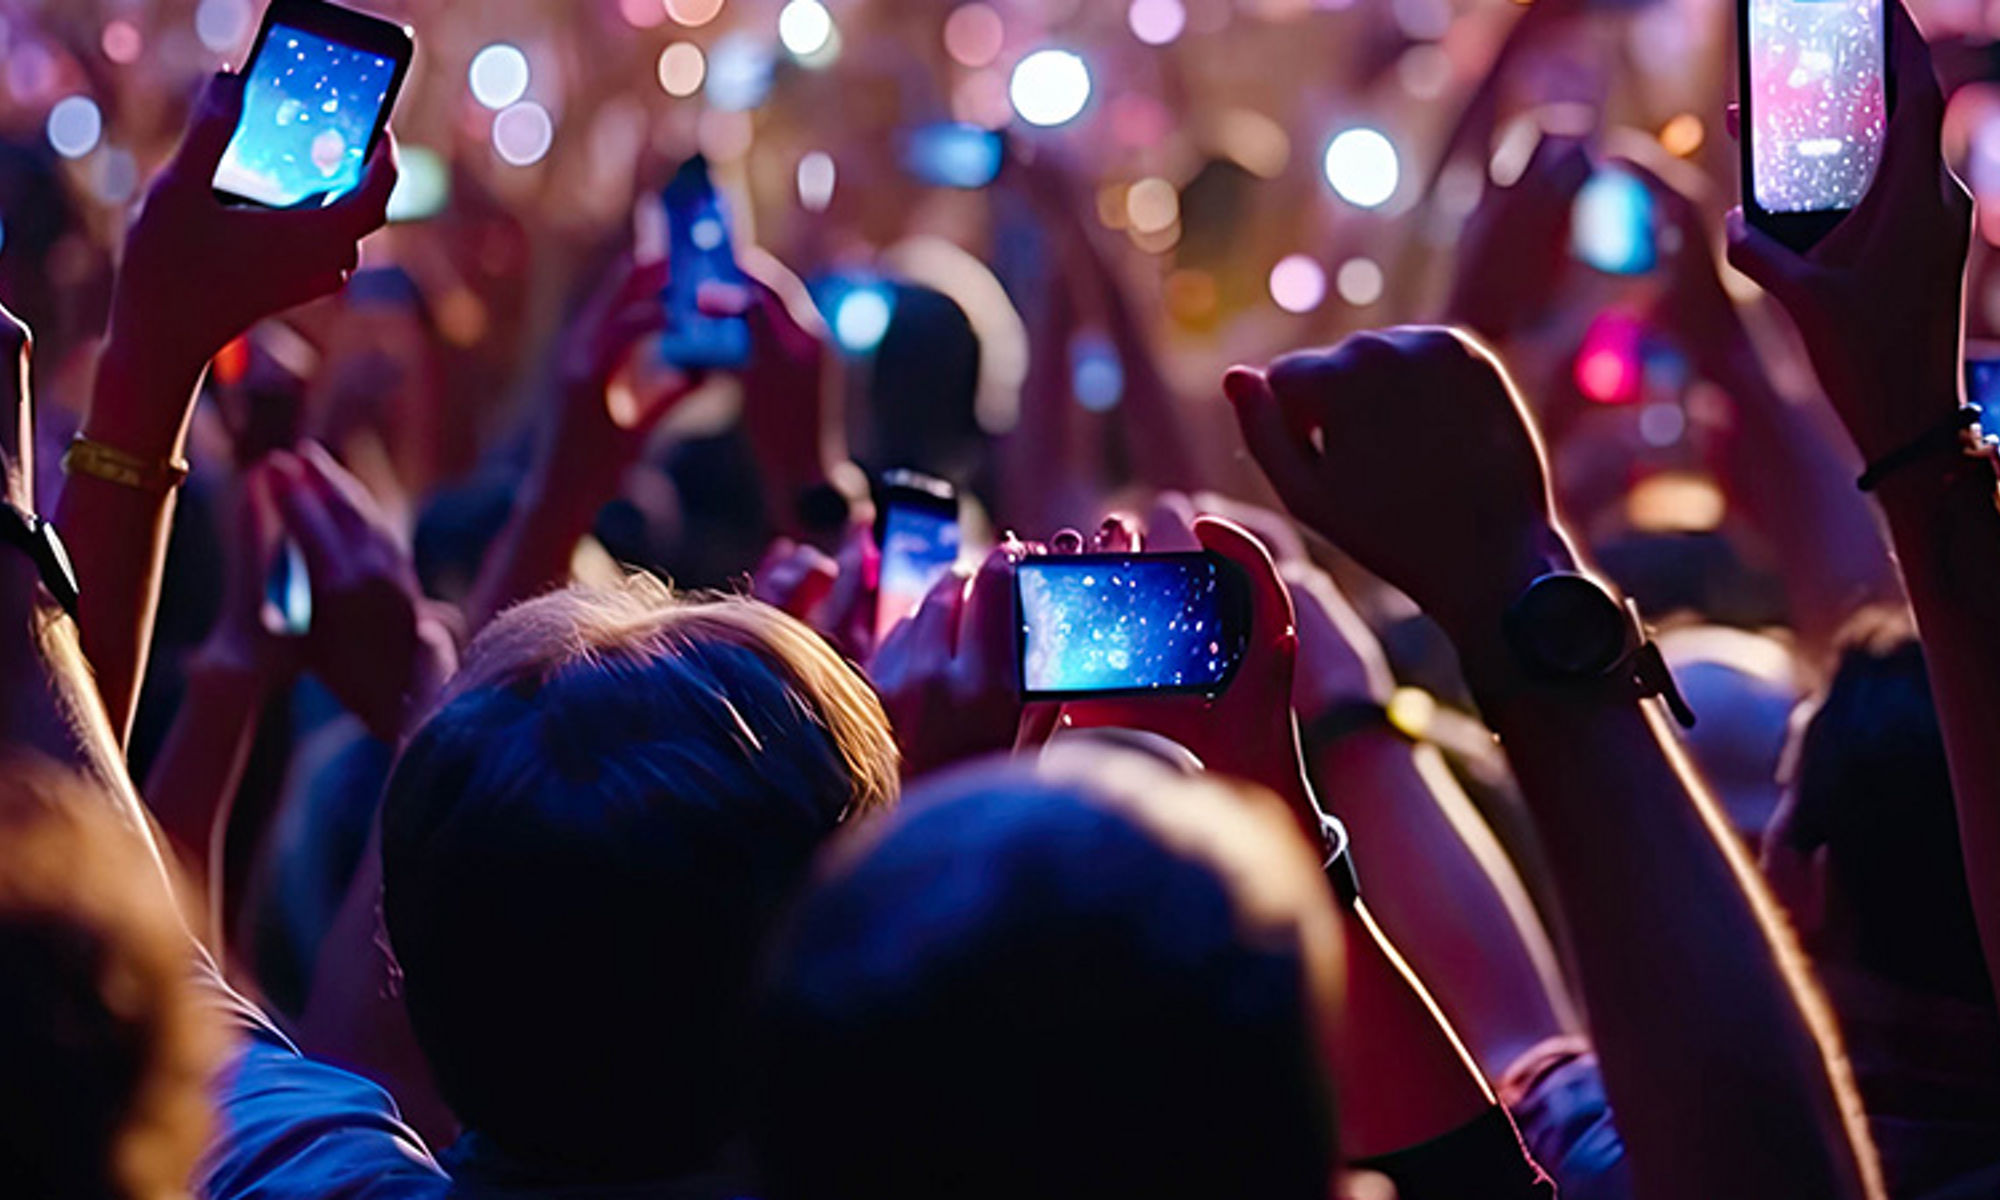 音樂會或晚會現場氣氛活躍，熱情的觀眾高舉手機，拍攝和記錄精彩的演出。插圖由生成式 AI 製作